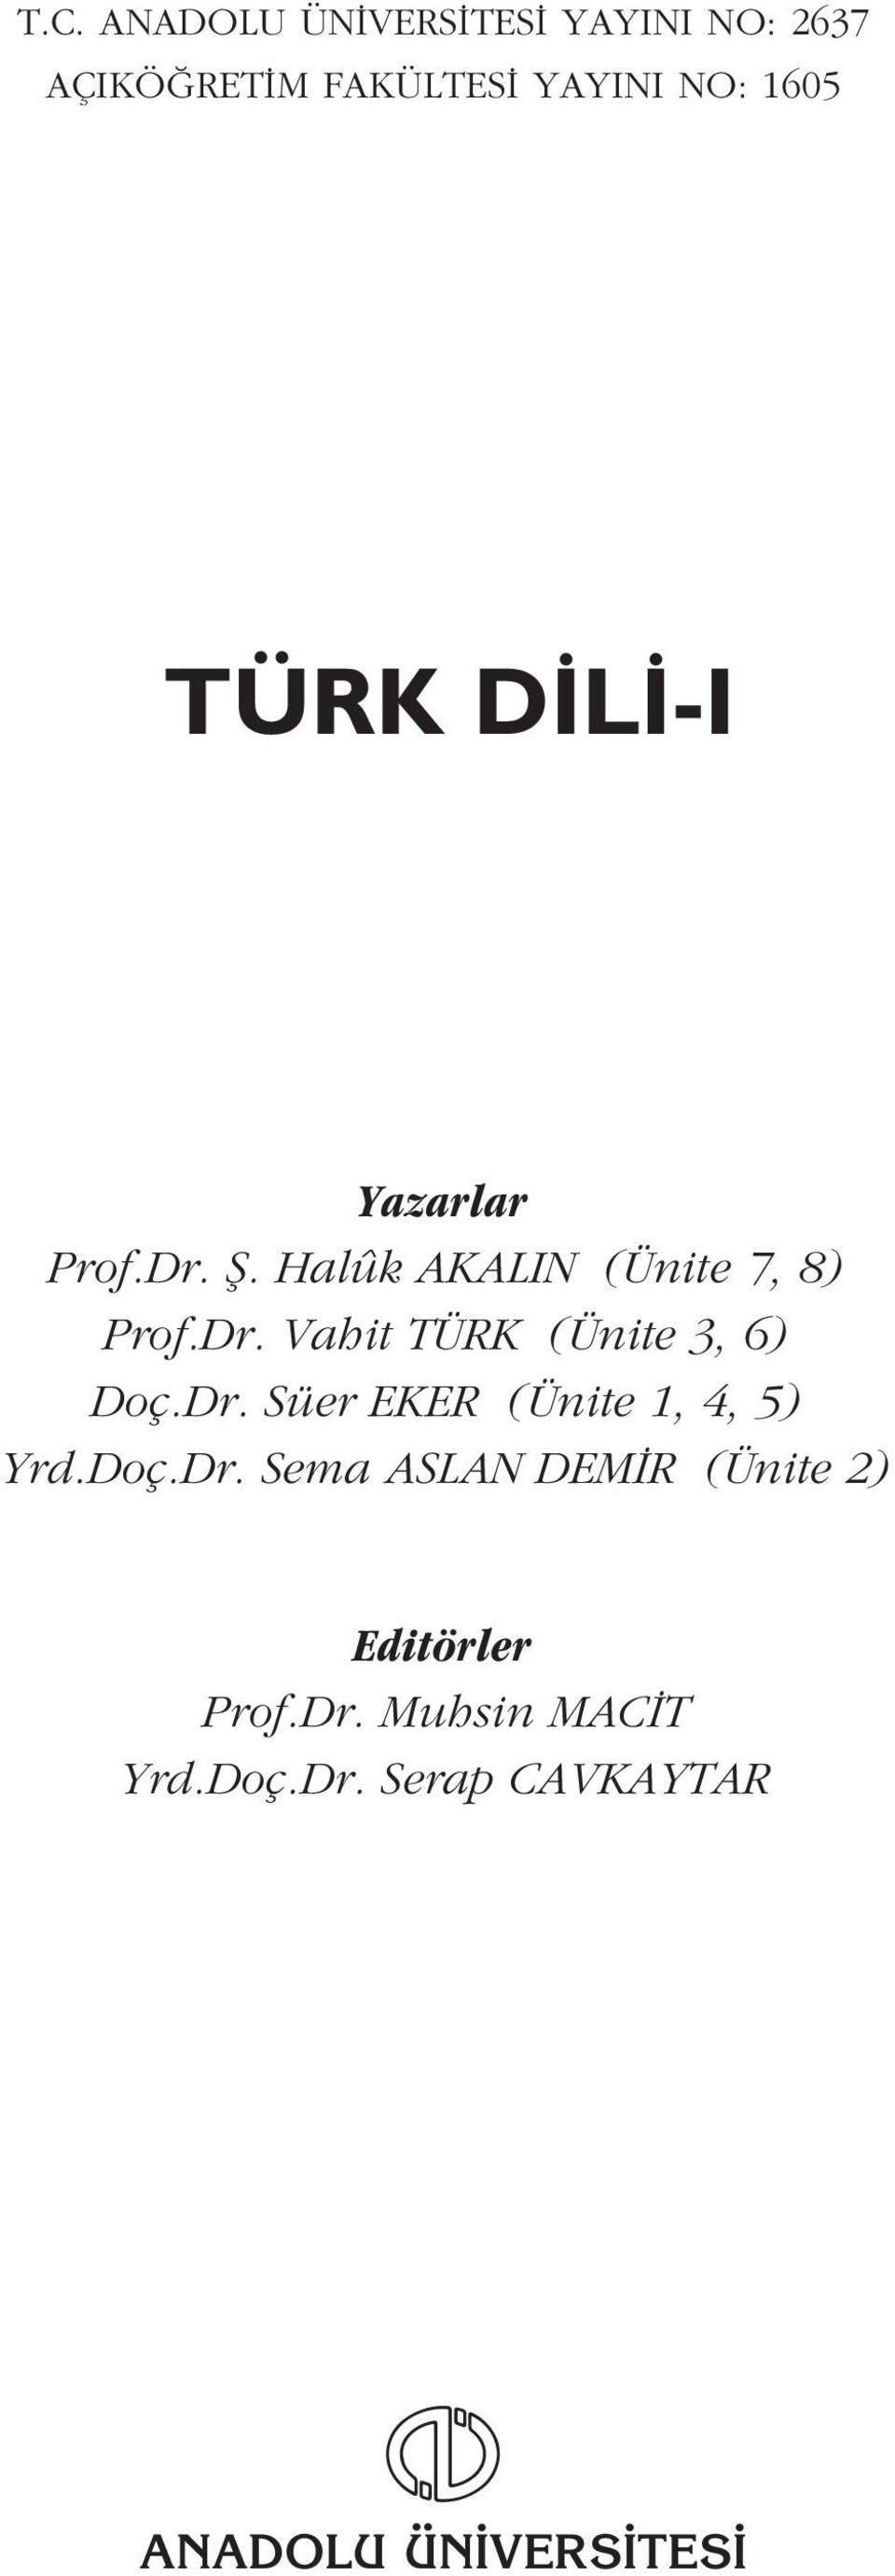 Dr. Süer EKER (Ünite 1, 4, 5) Yrd.Doç.Dr. Sema ASLAN DEM R (Ünite 2) Editörler Prof.